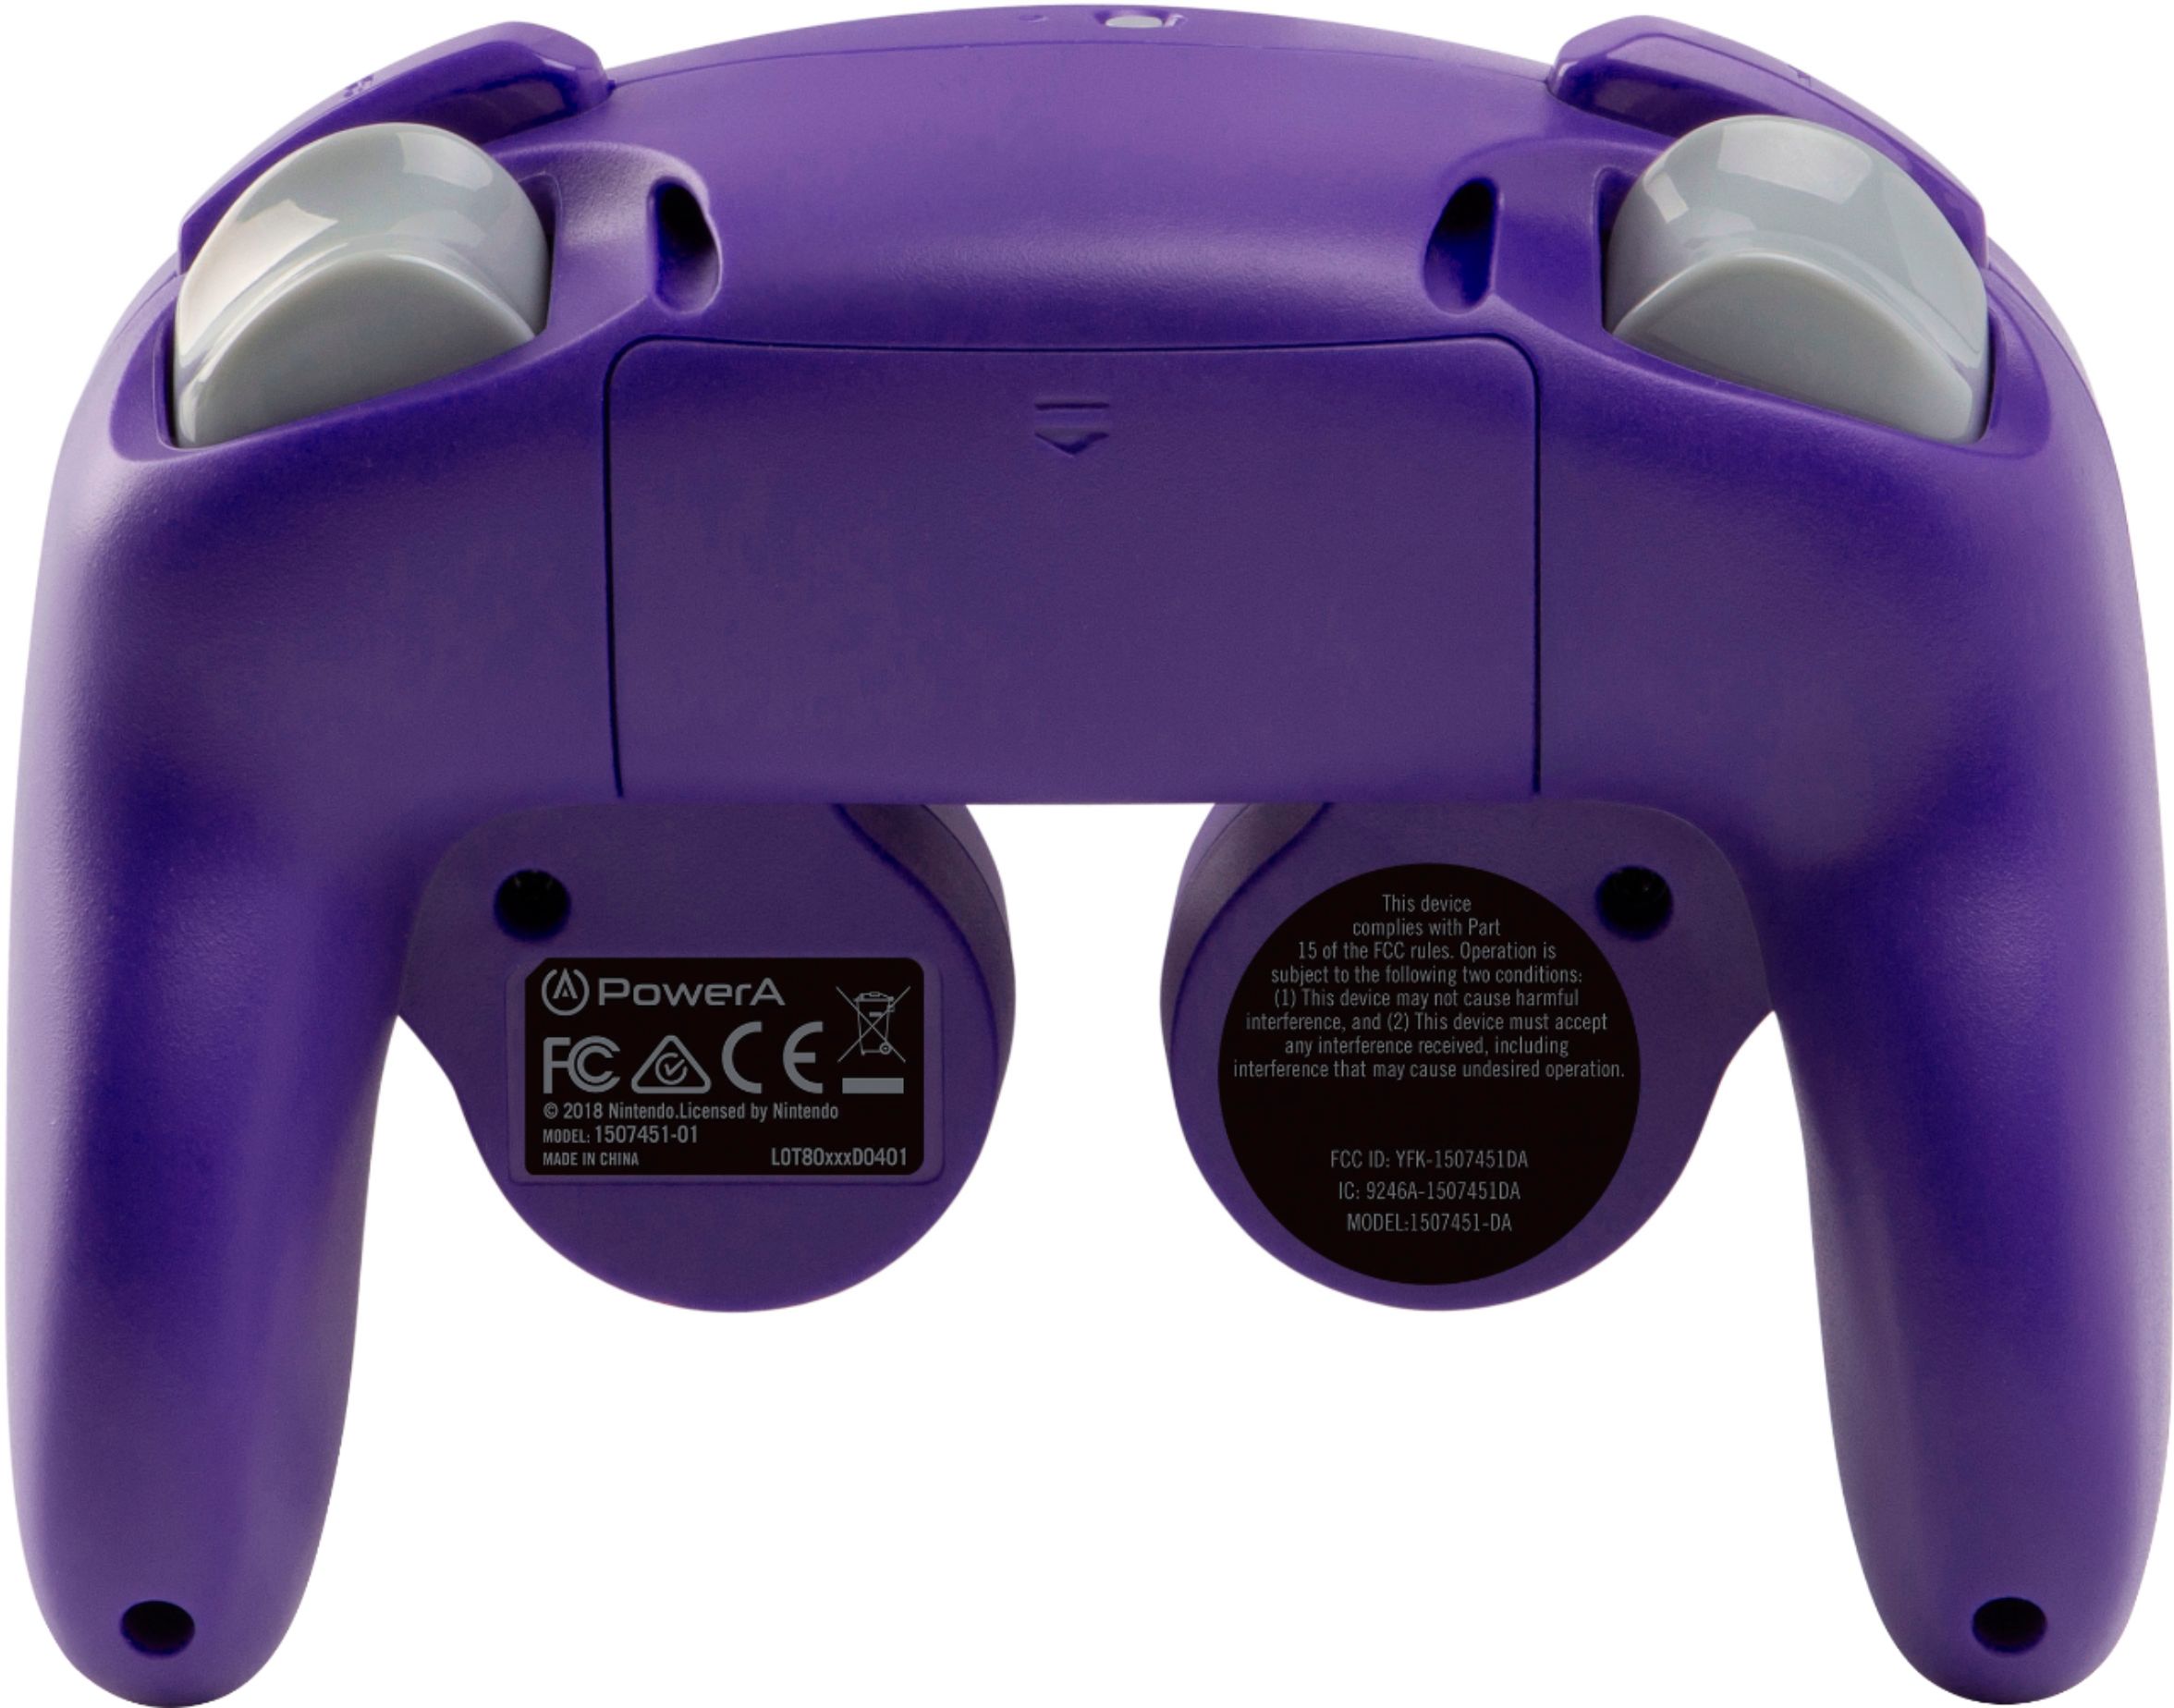 gamecube controller adapter best buy